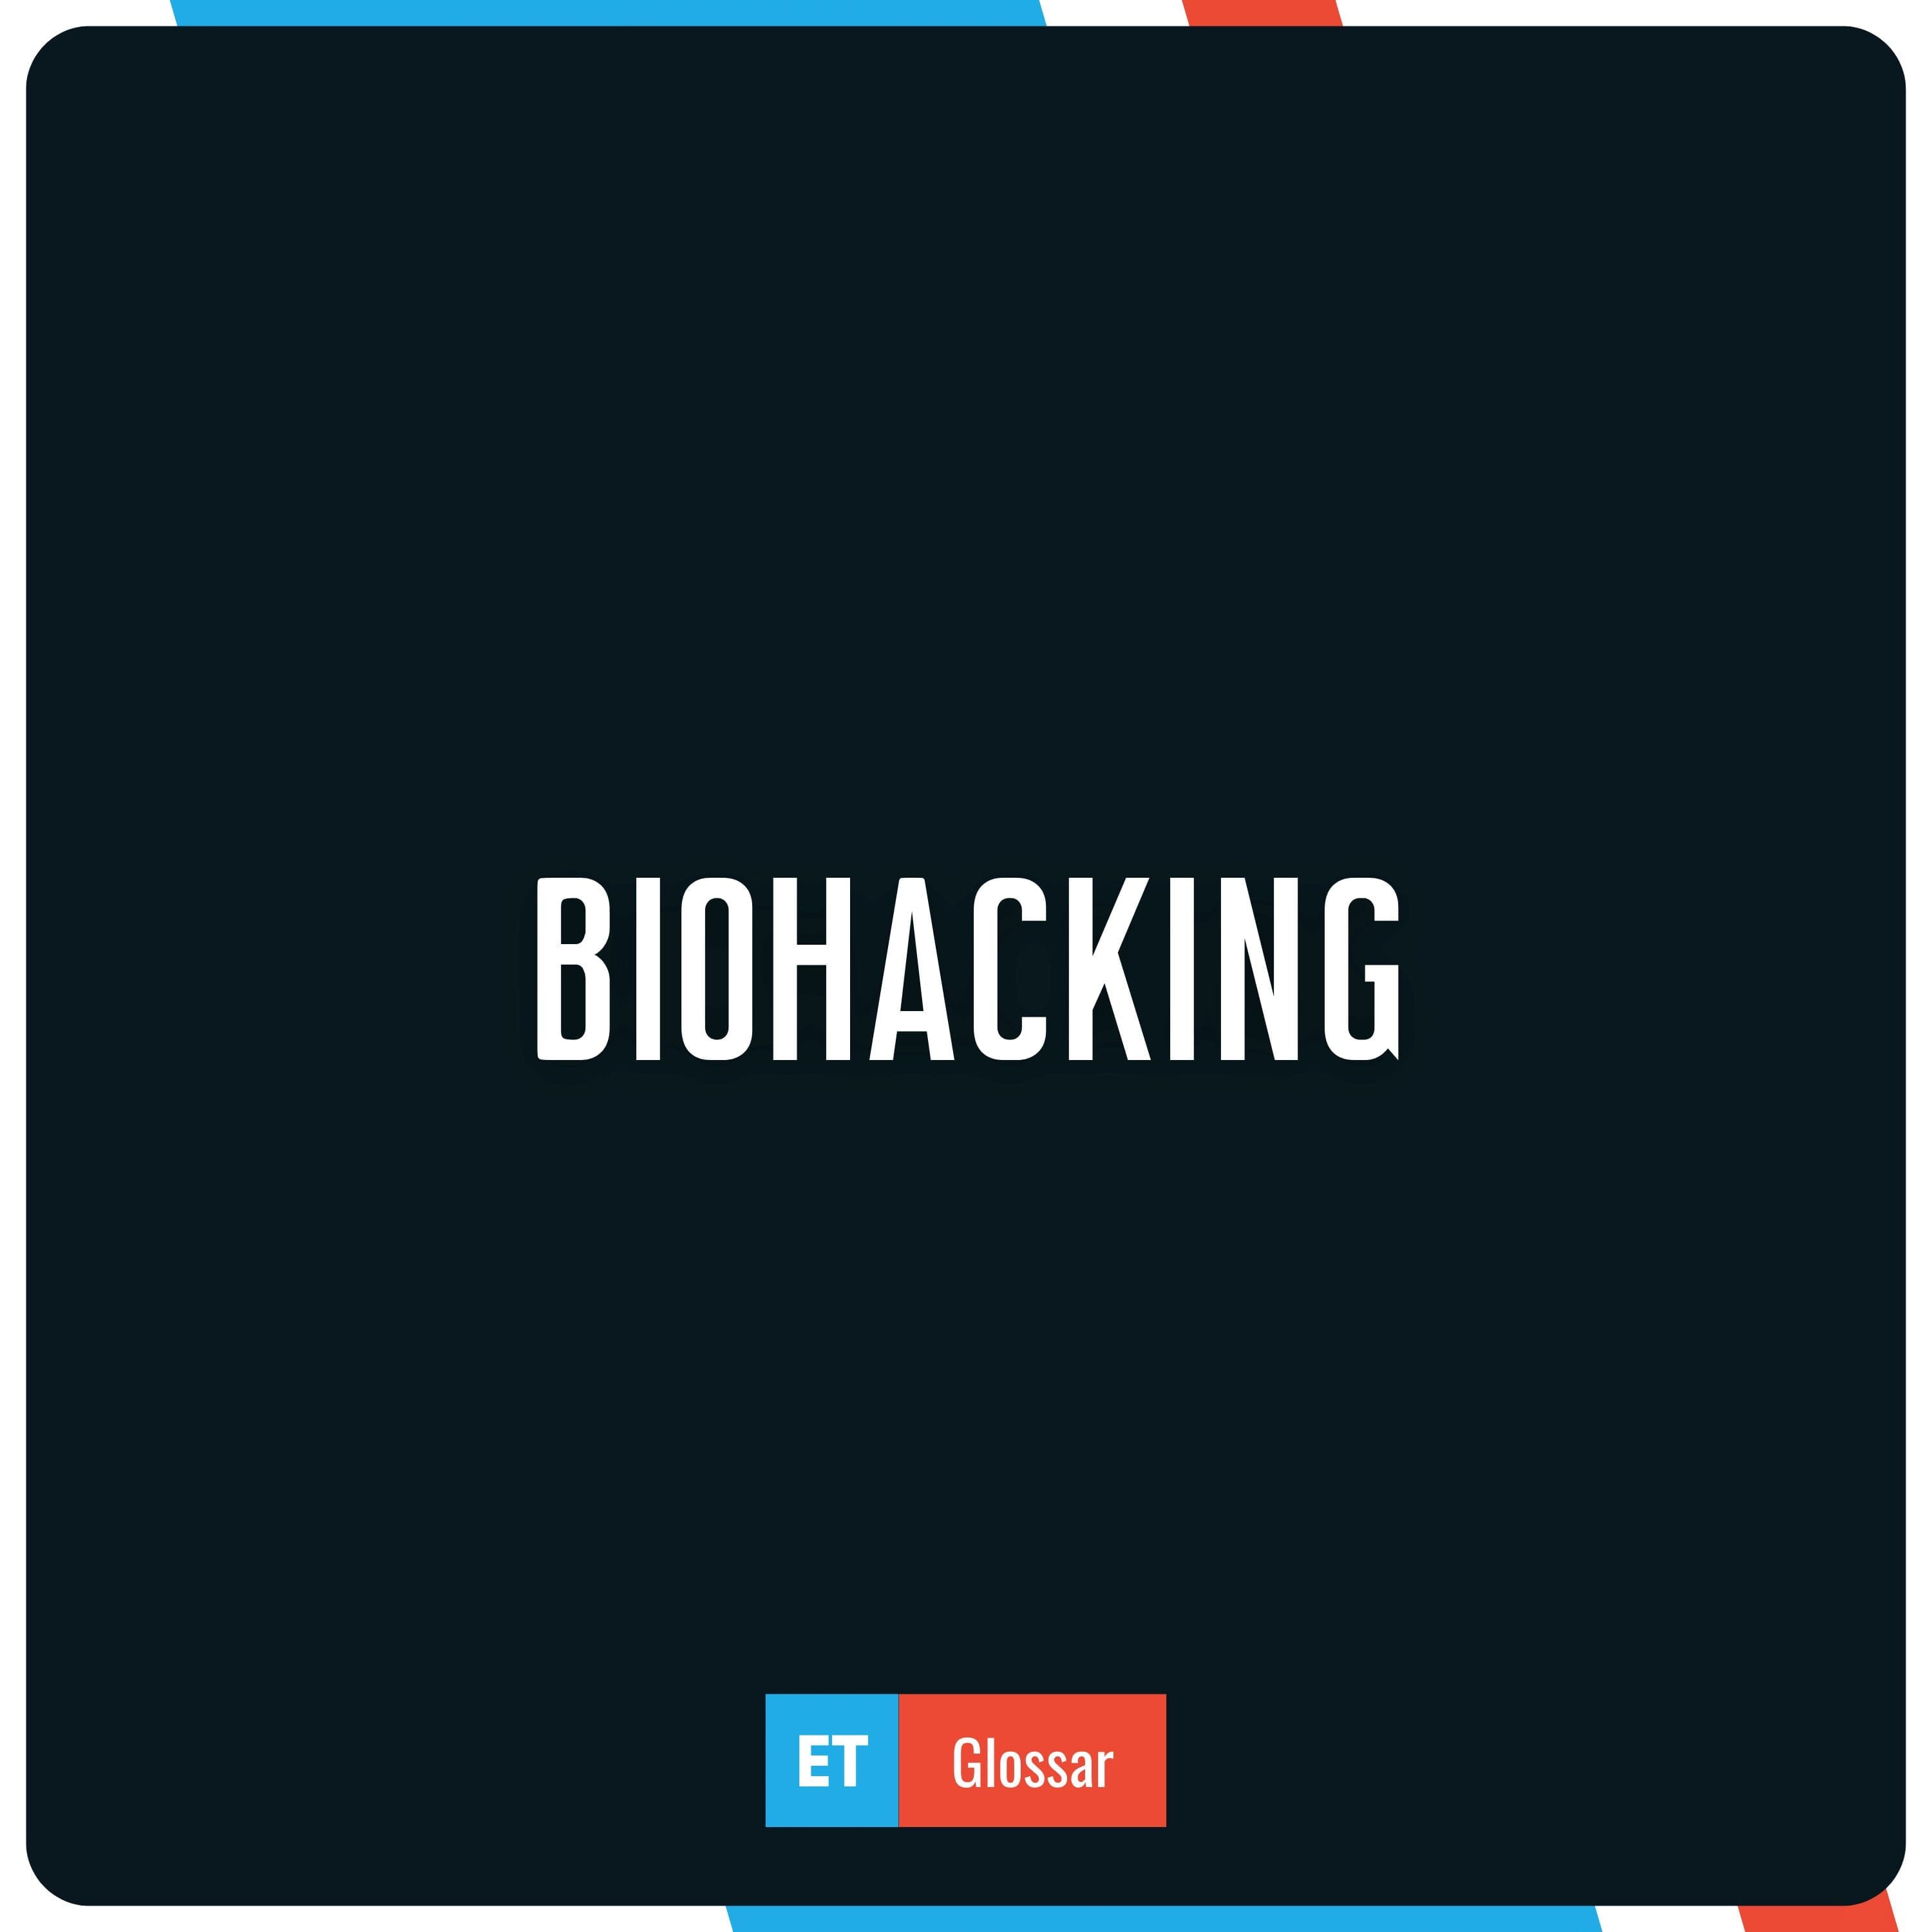 Biohacking einfach erklärt im Exciting Tech Glossar